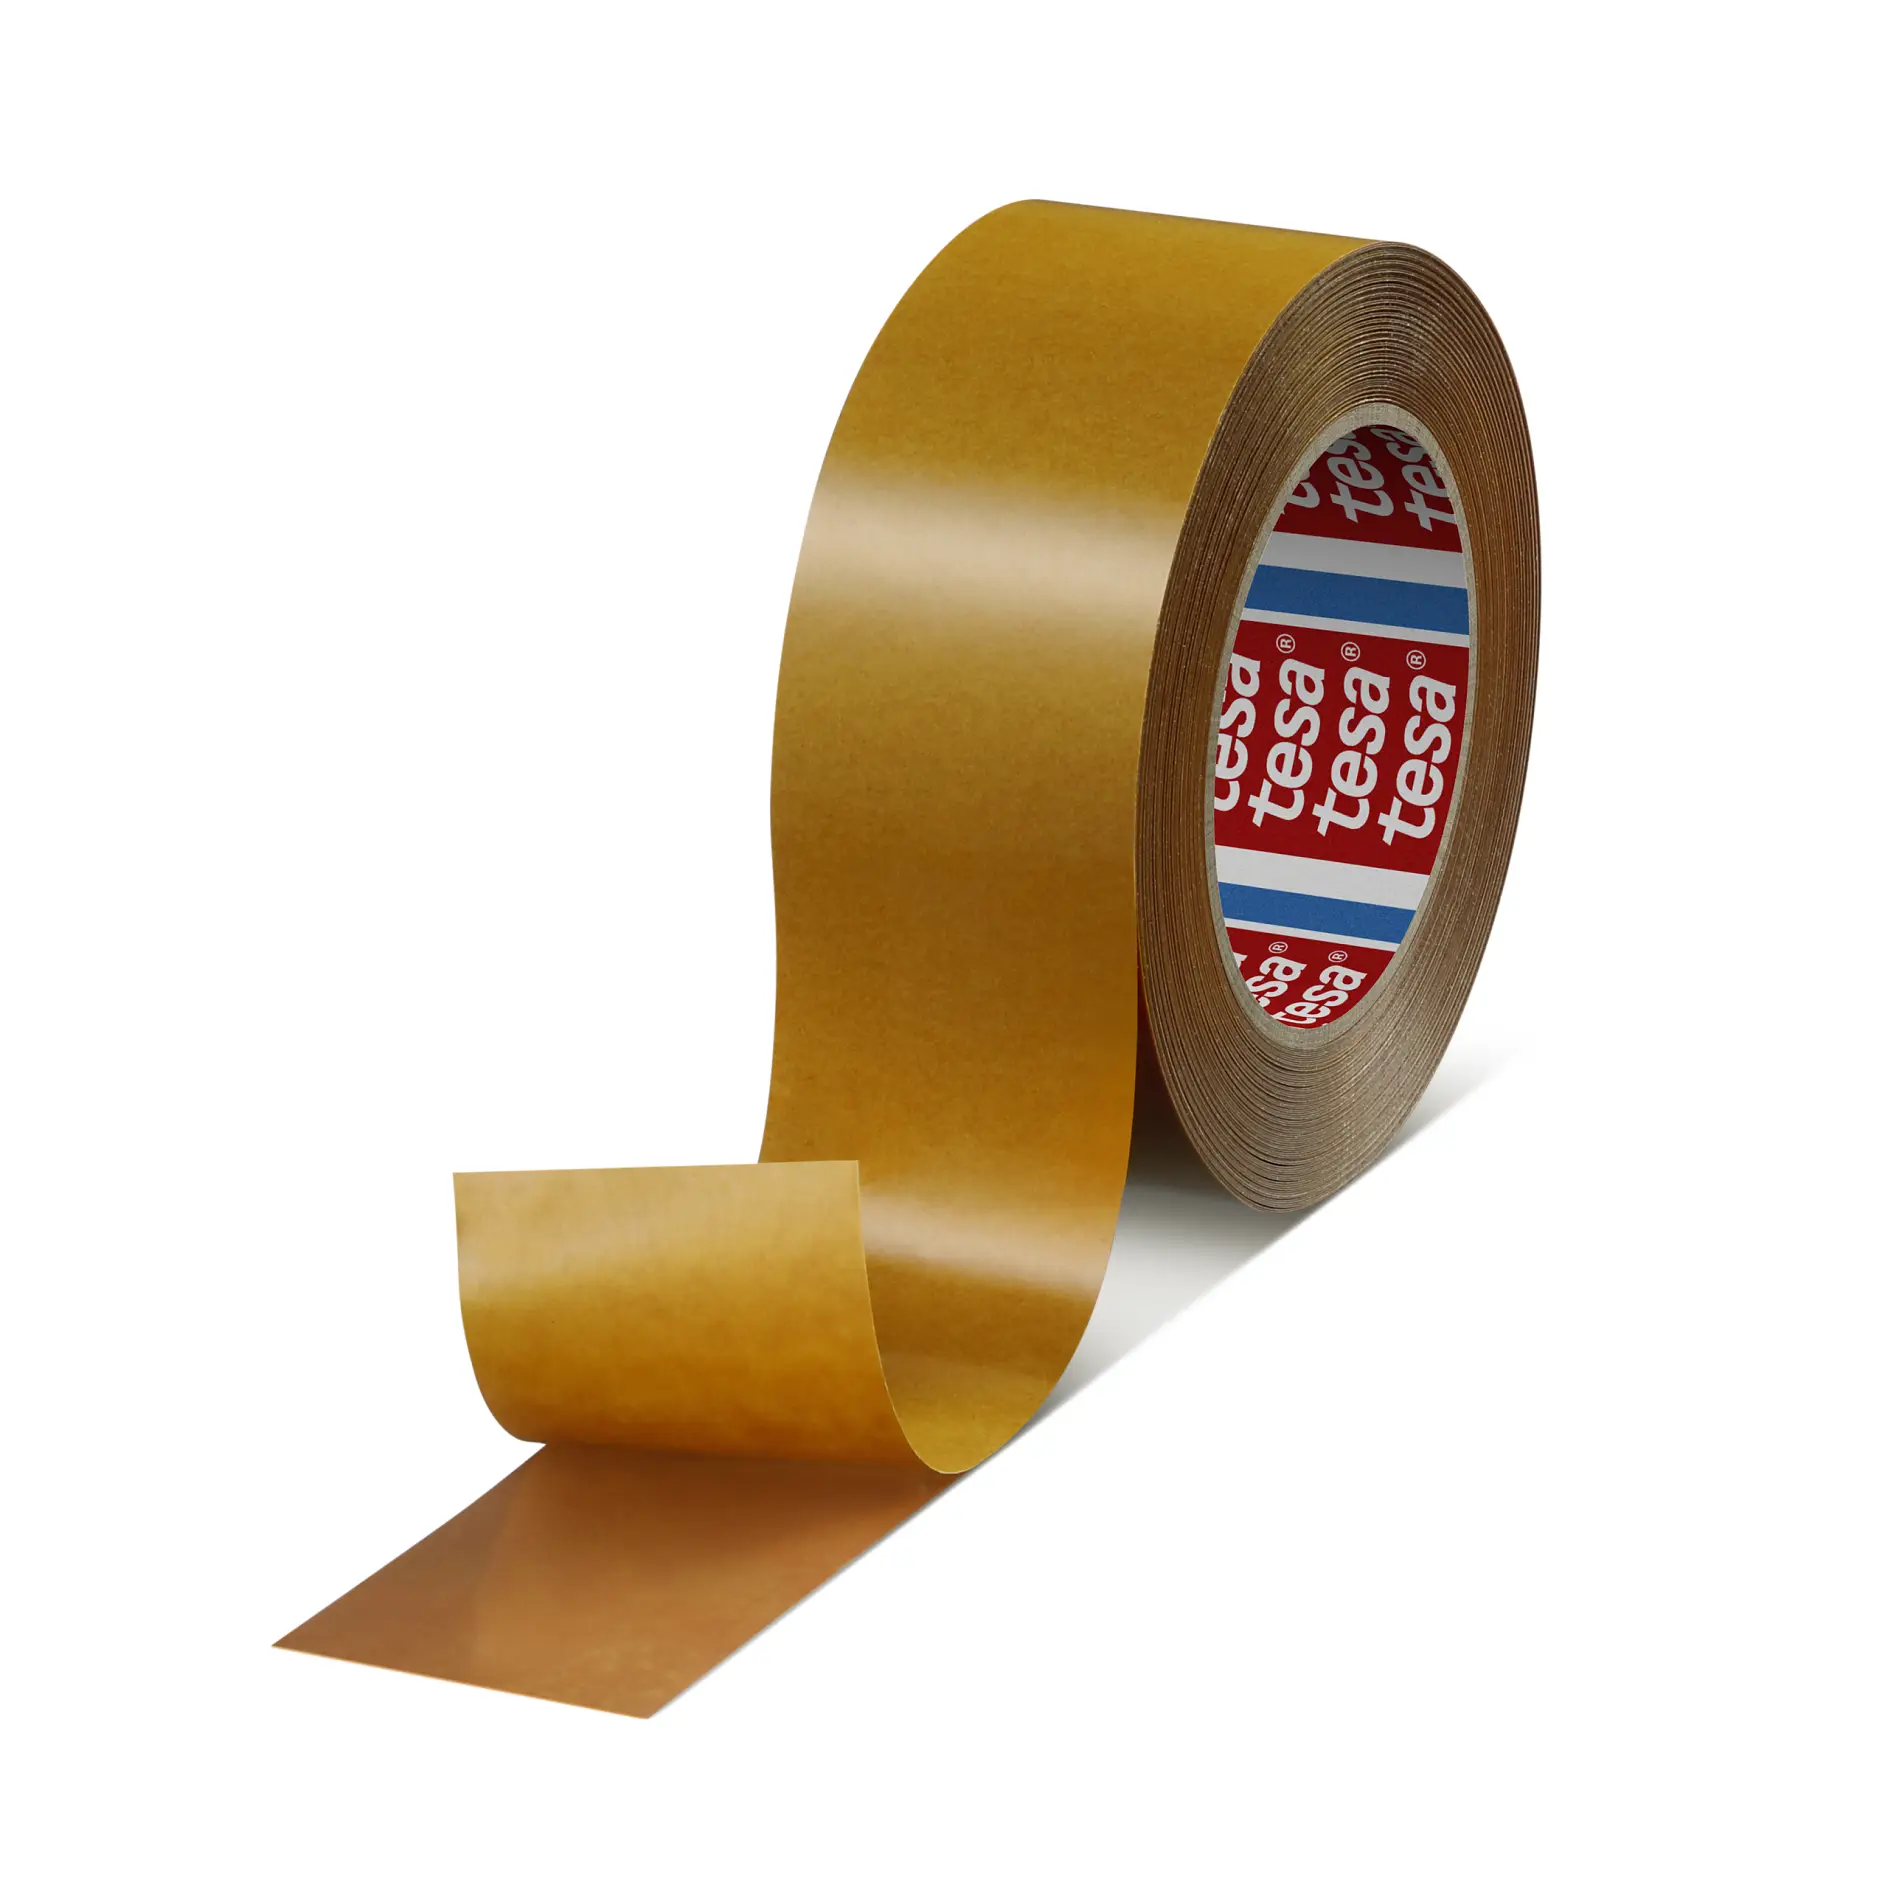 tesa-haf-8401-200-amber-reactive-mounting-tape-brown-084010001700-pr